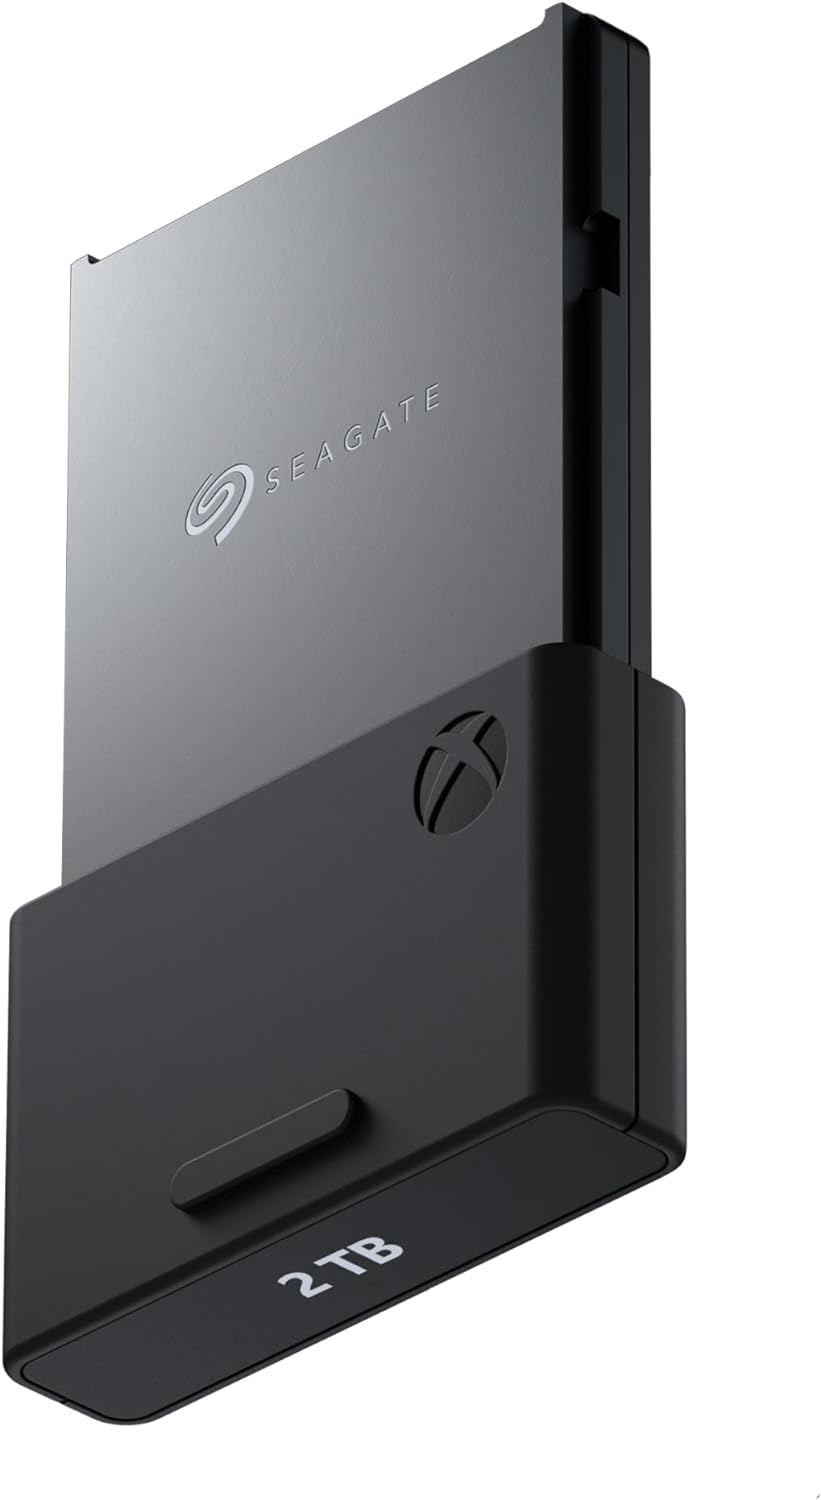 Seagate STJR1000400 Tarjeta de expansión de Almacenamiento para Xbox Series X|S Unidad de Estado sólido de 1 TB - SSD de expansión NVMe para Xbox Series X|S, Gris